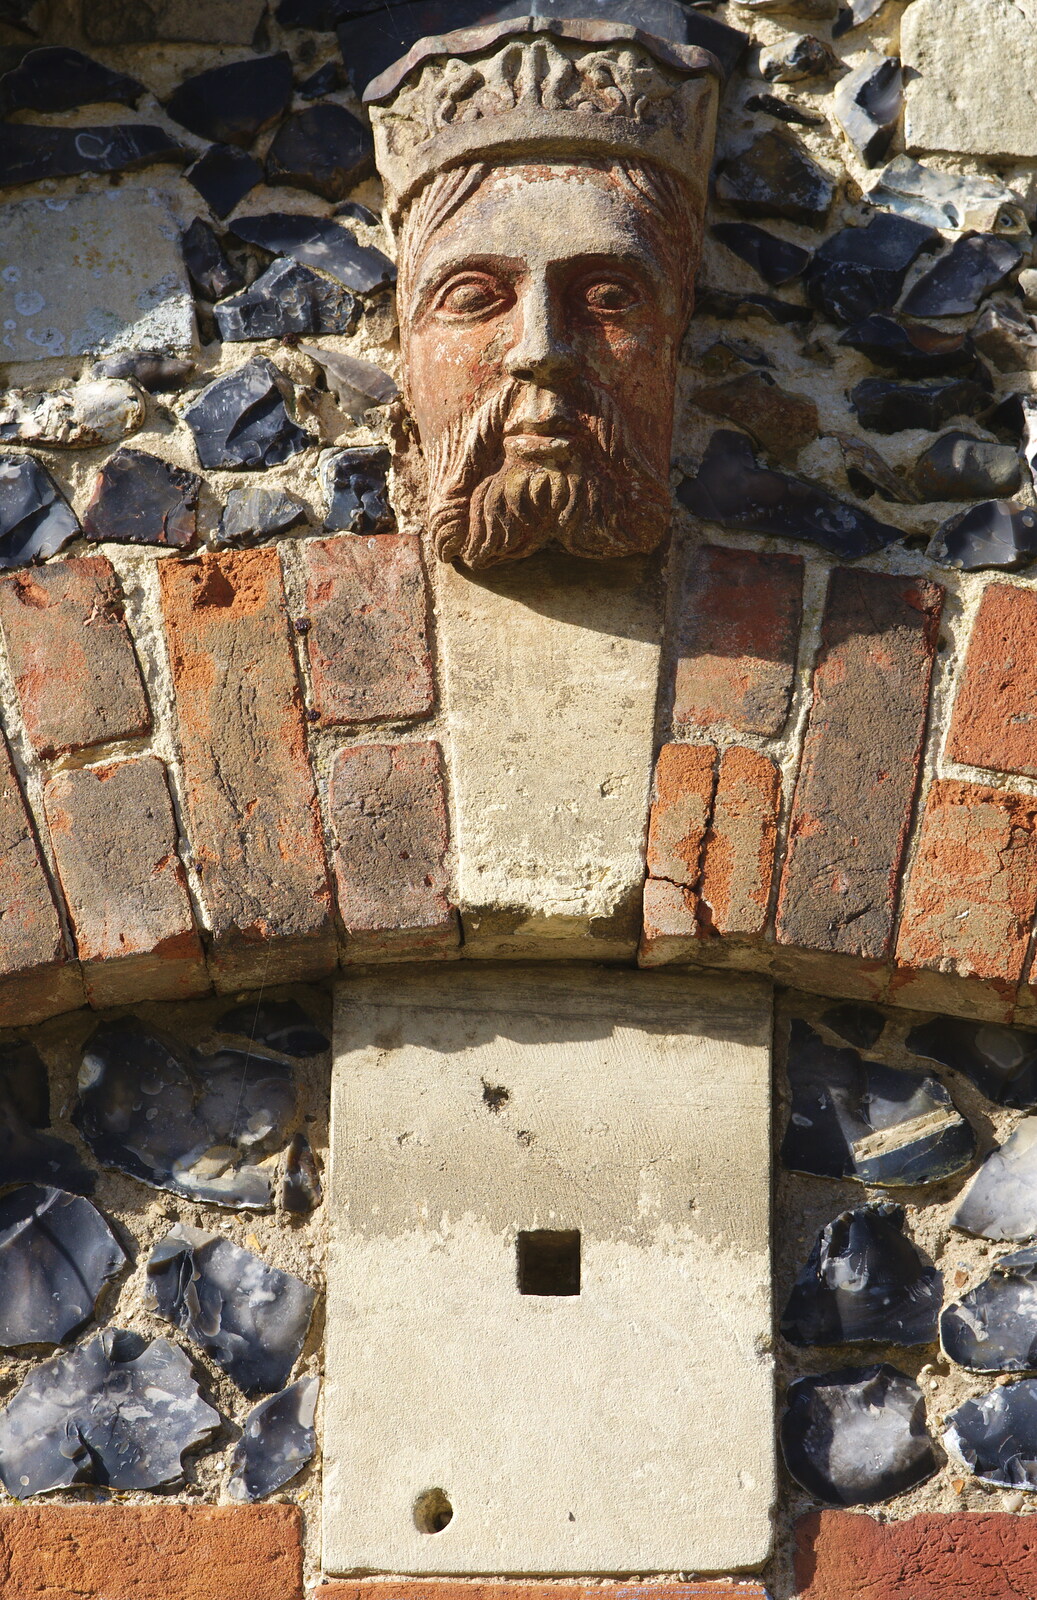 A stone head from A Trip to Framlingham Castle, Framlingham, Suffolk - 16th February 2014